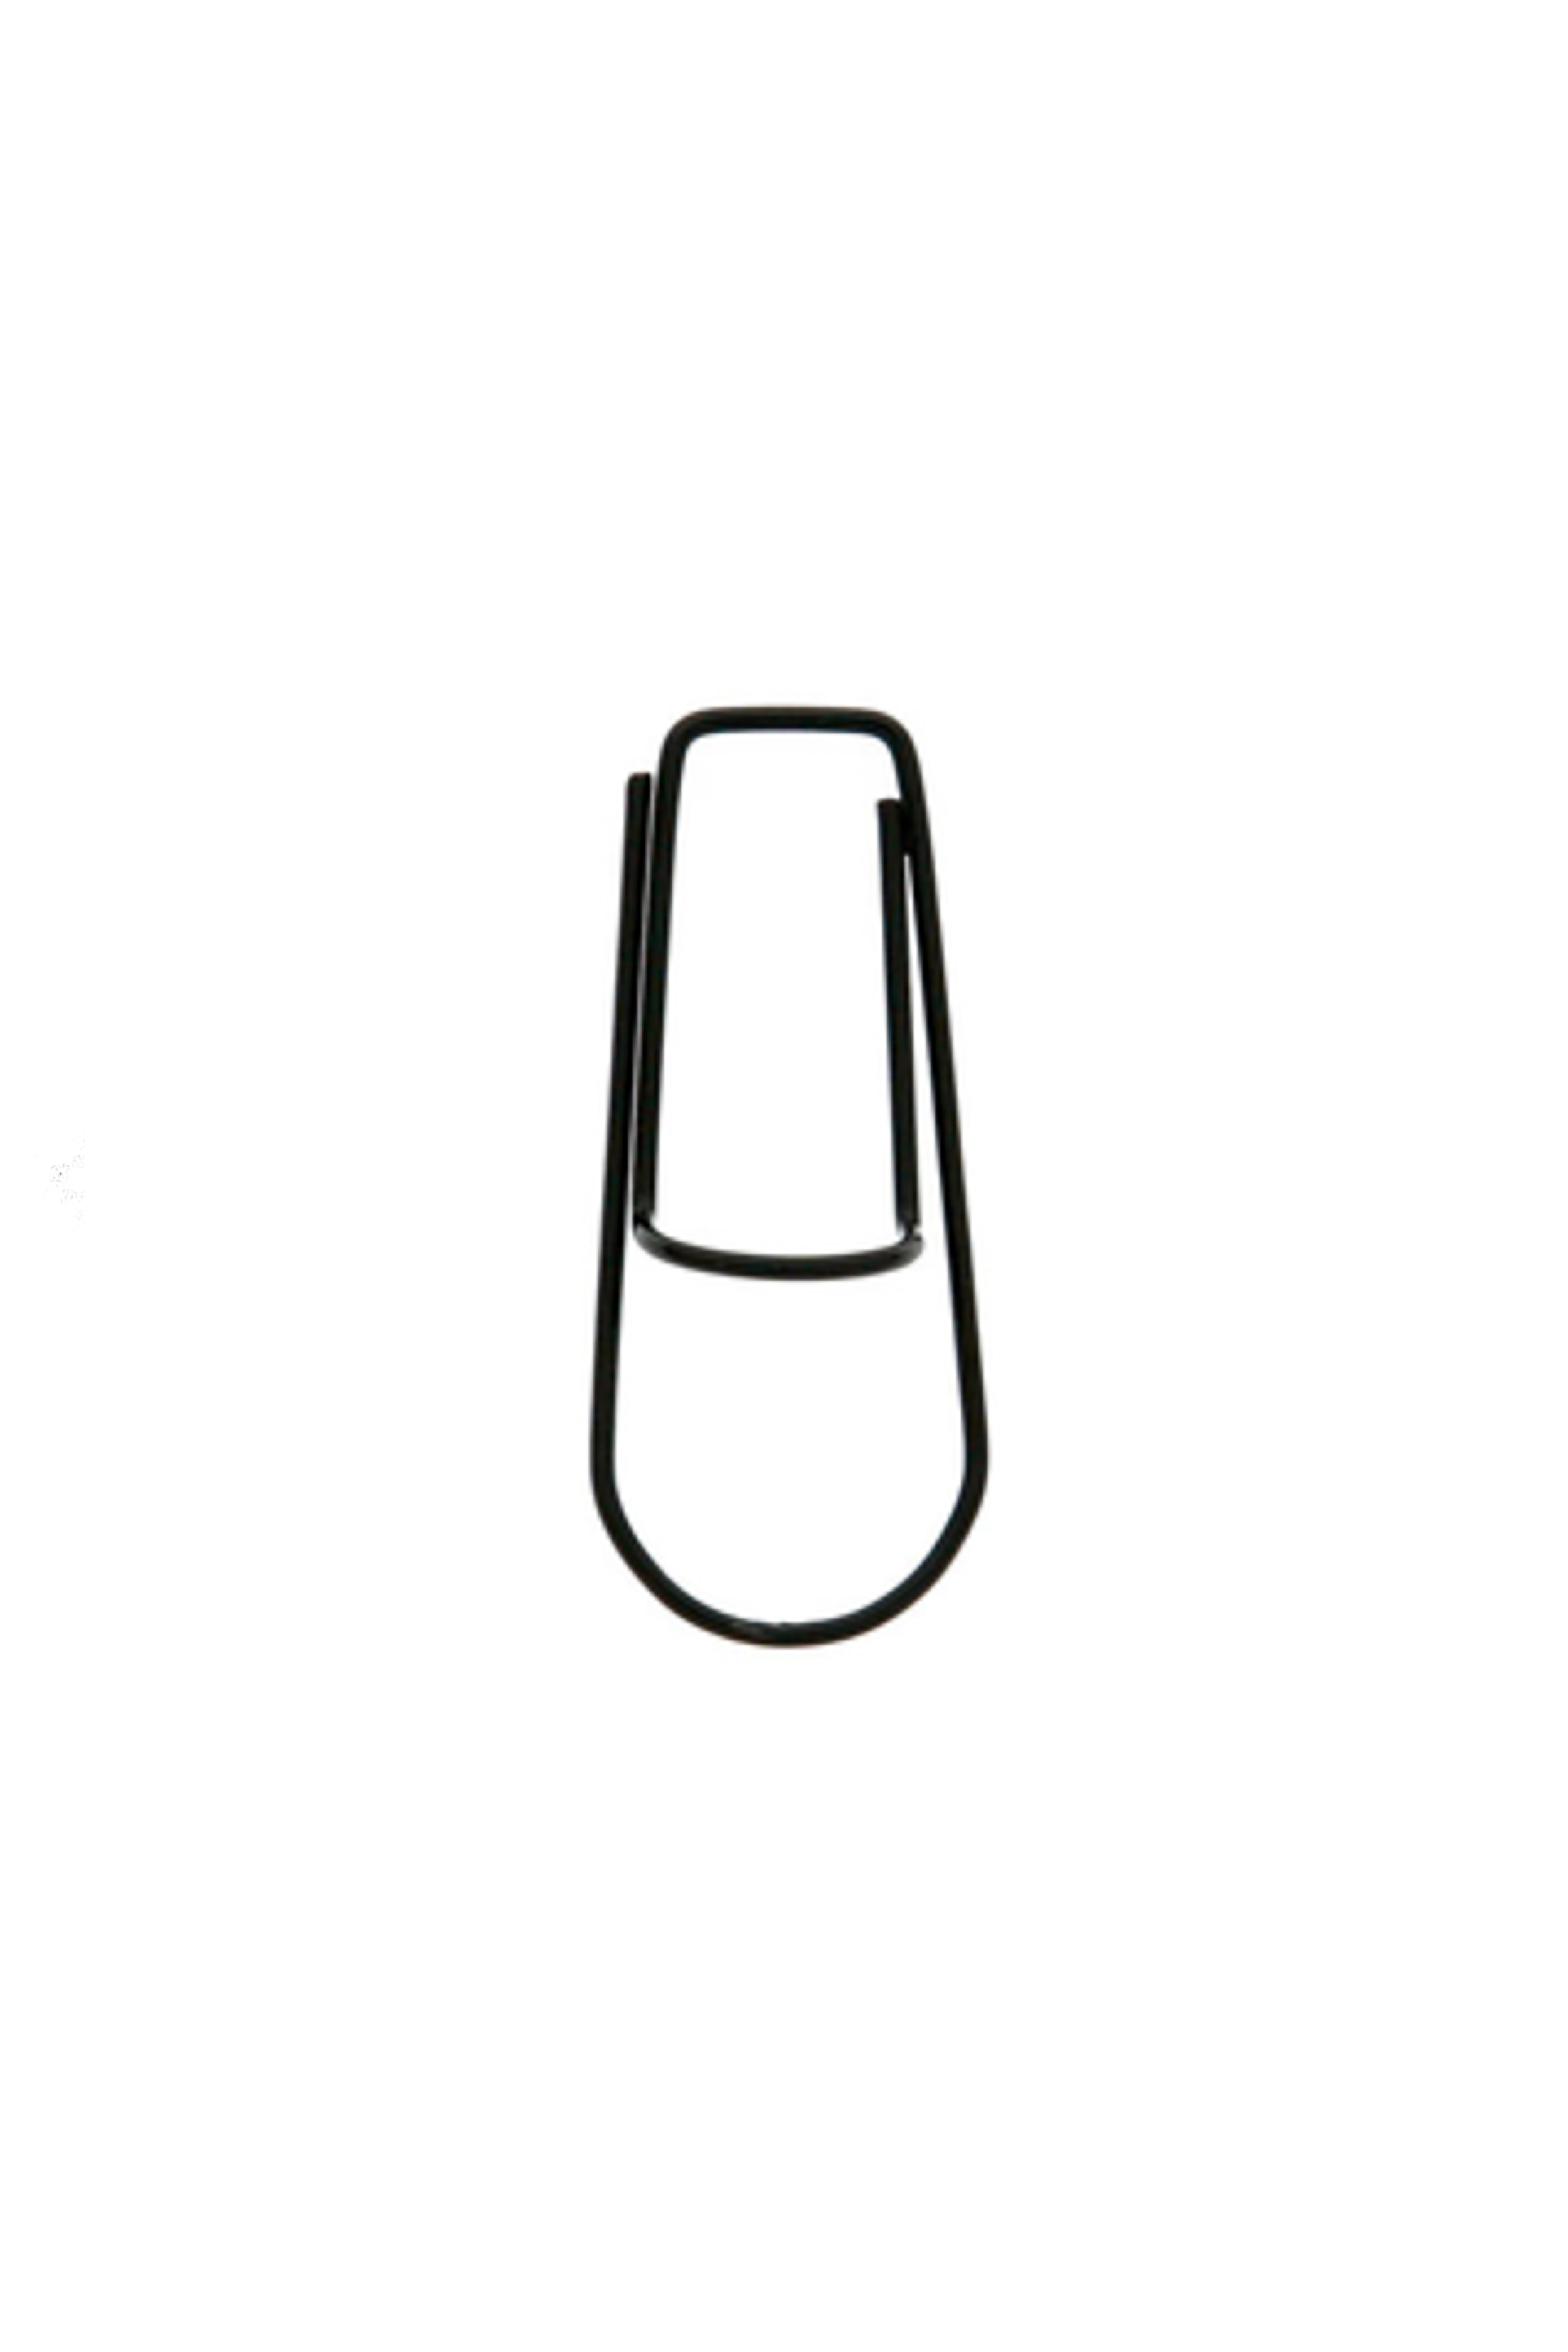 Pen Hook Clip in Black